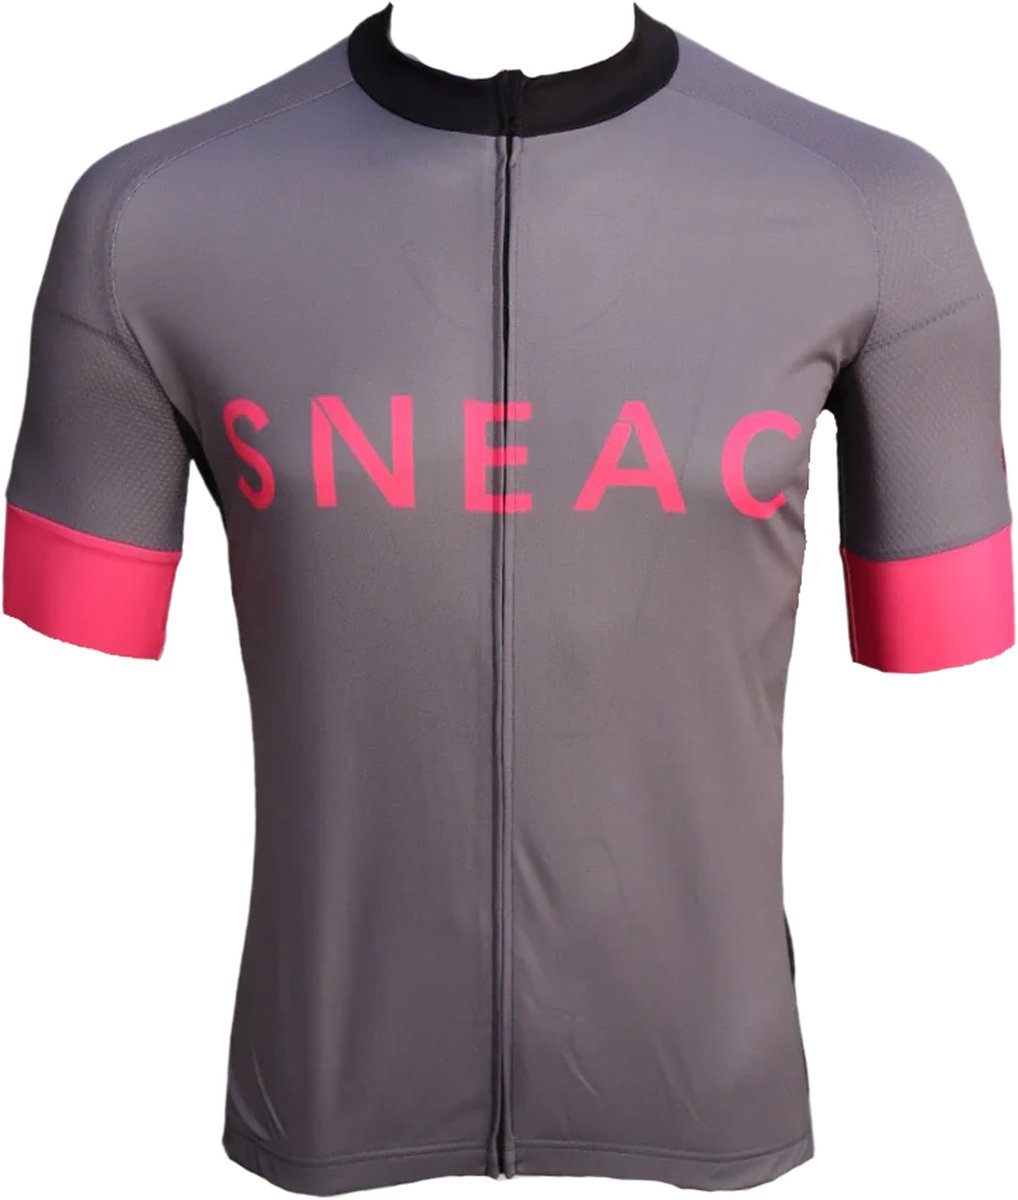 SNEAC comformance wear - Wielershirt korte mouw -SNEAC- grijs , maat S